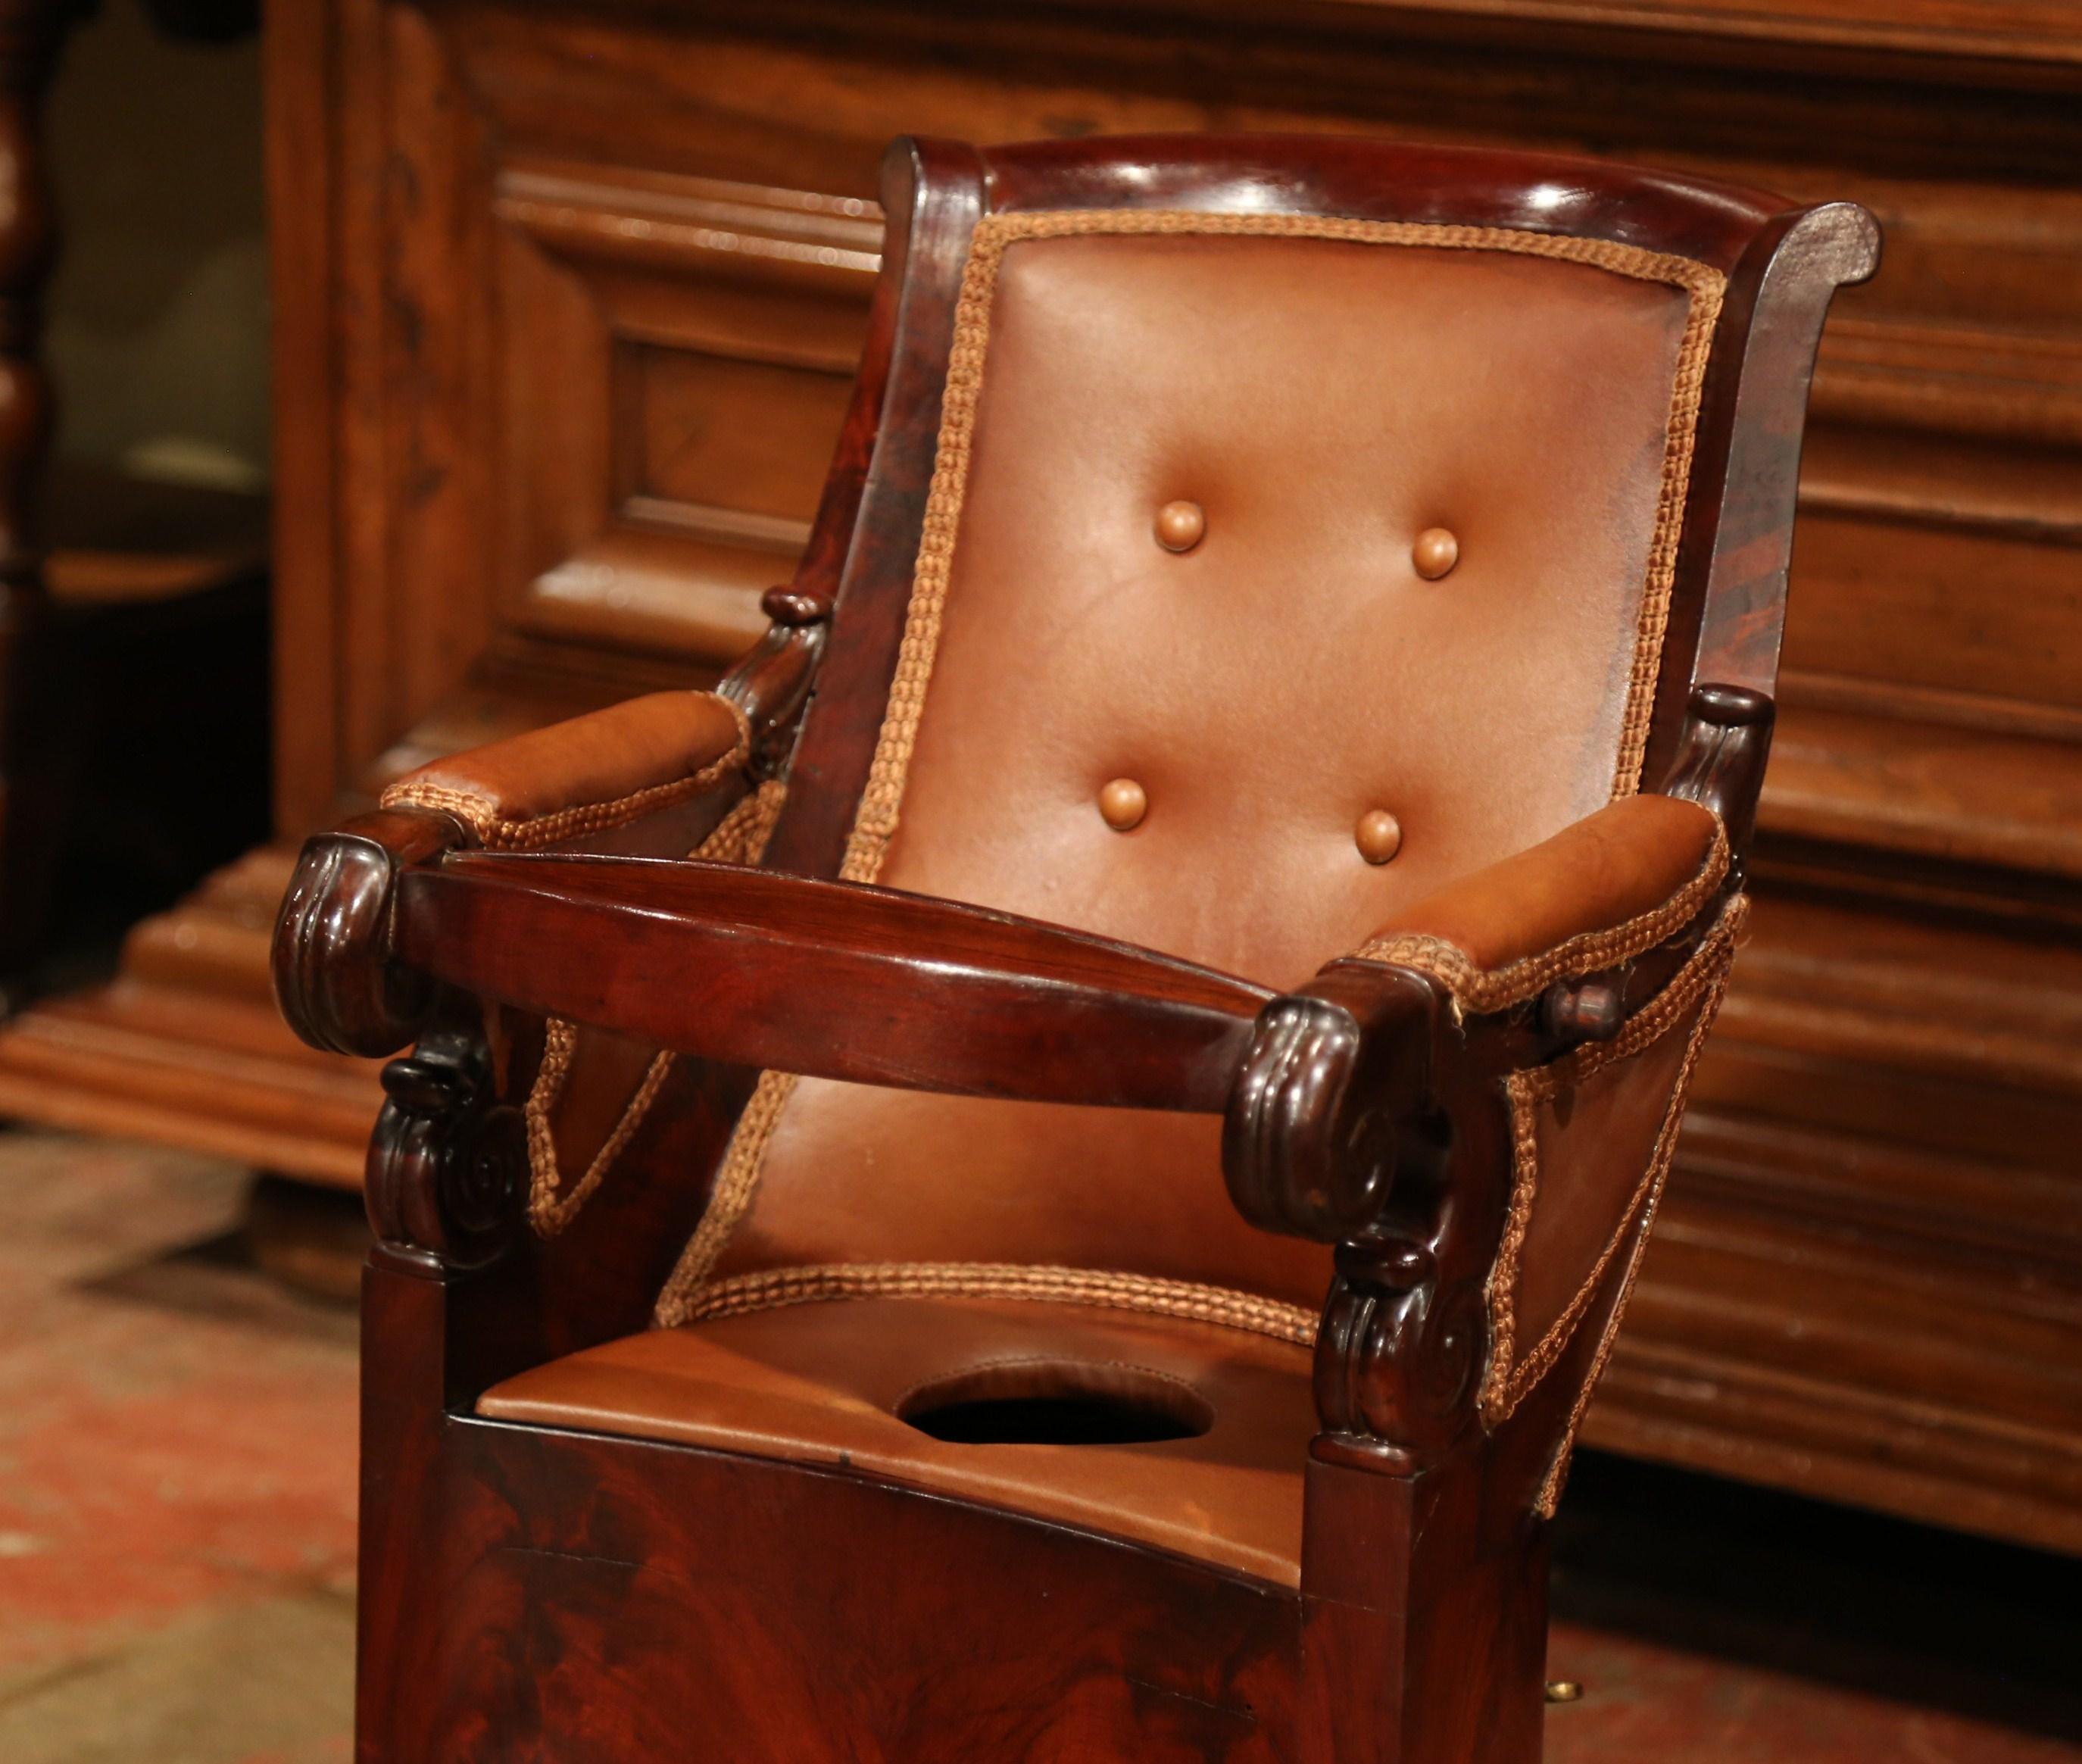 Bringen Sie Königlichkeit und Eleganz in Ihr Zuhause mit diesem antiken Babystuhl und behandeln Sie Ihr Kind wie einen König! Der um 1870 in Frankreich gefertigte Mahagoni-Sessel mit Tatzenfüßen und Rädern ist ein wahres Schmuckstück. Er verfügt